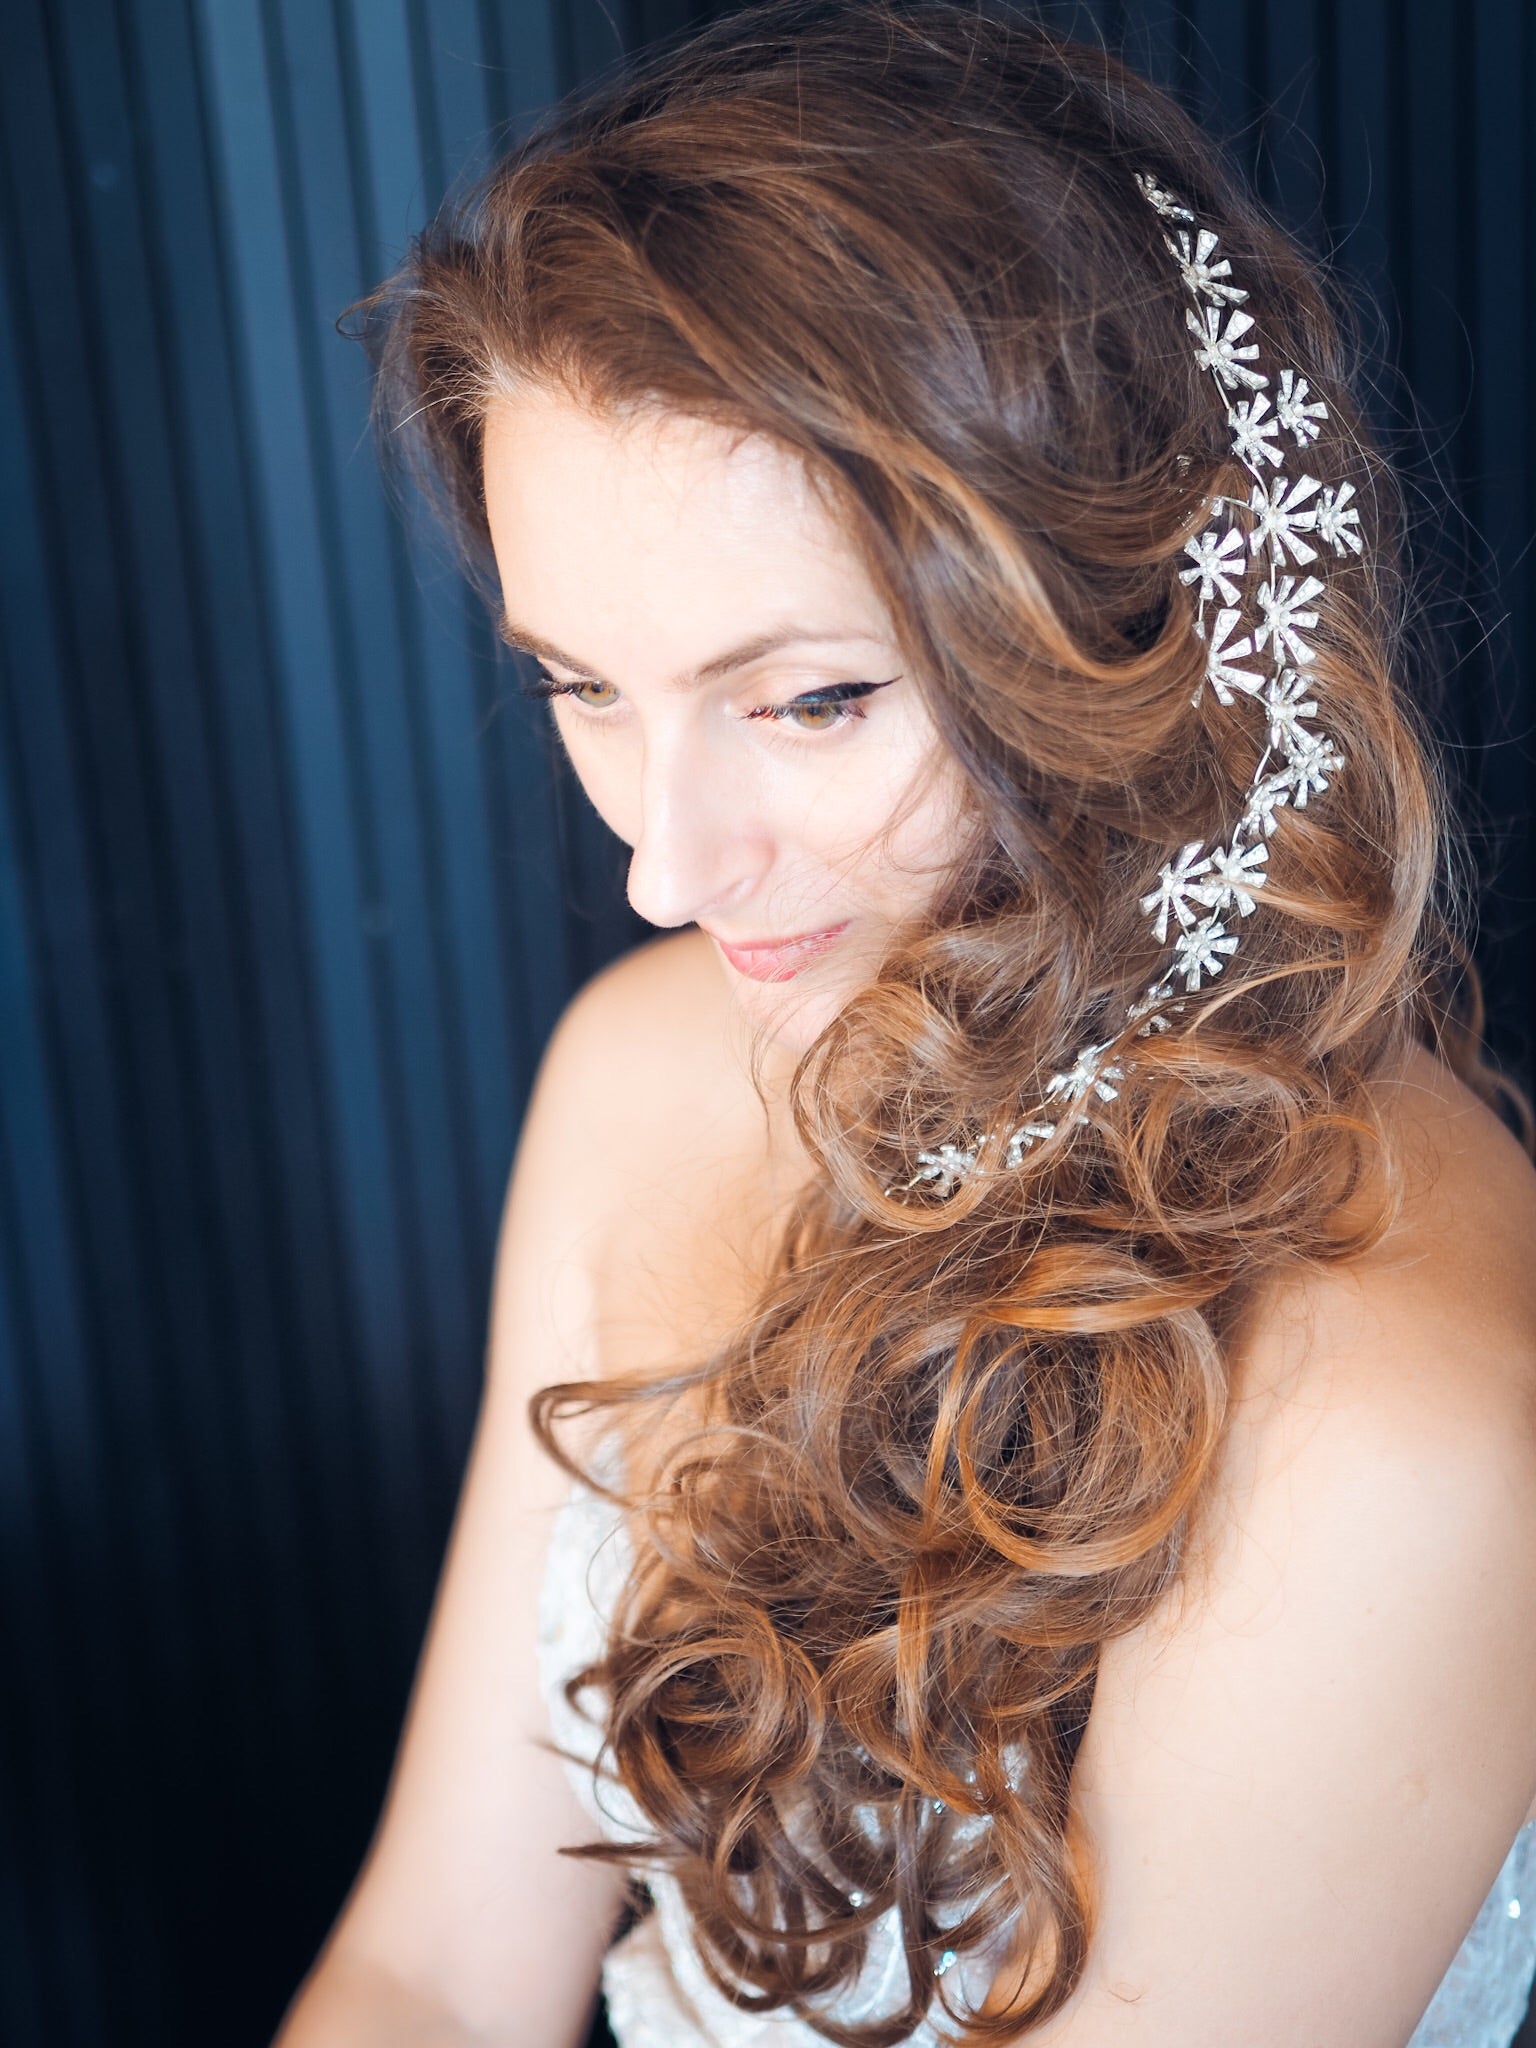 Dandelion bridal hair band